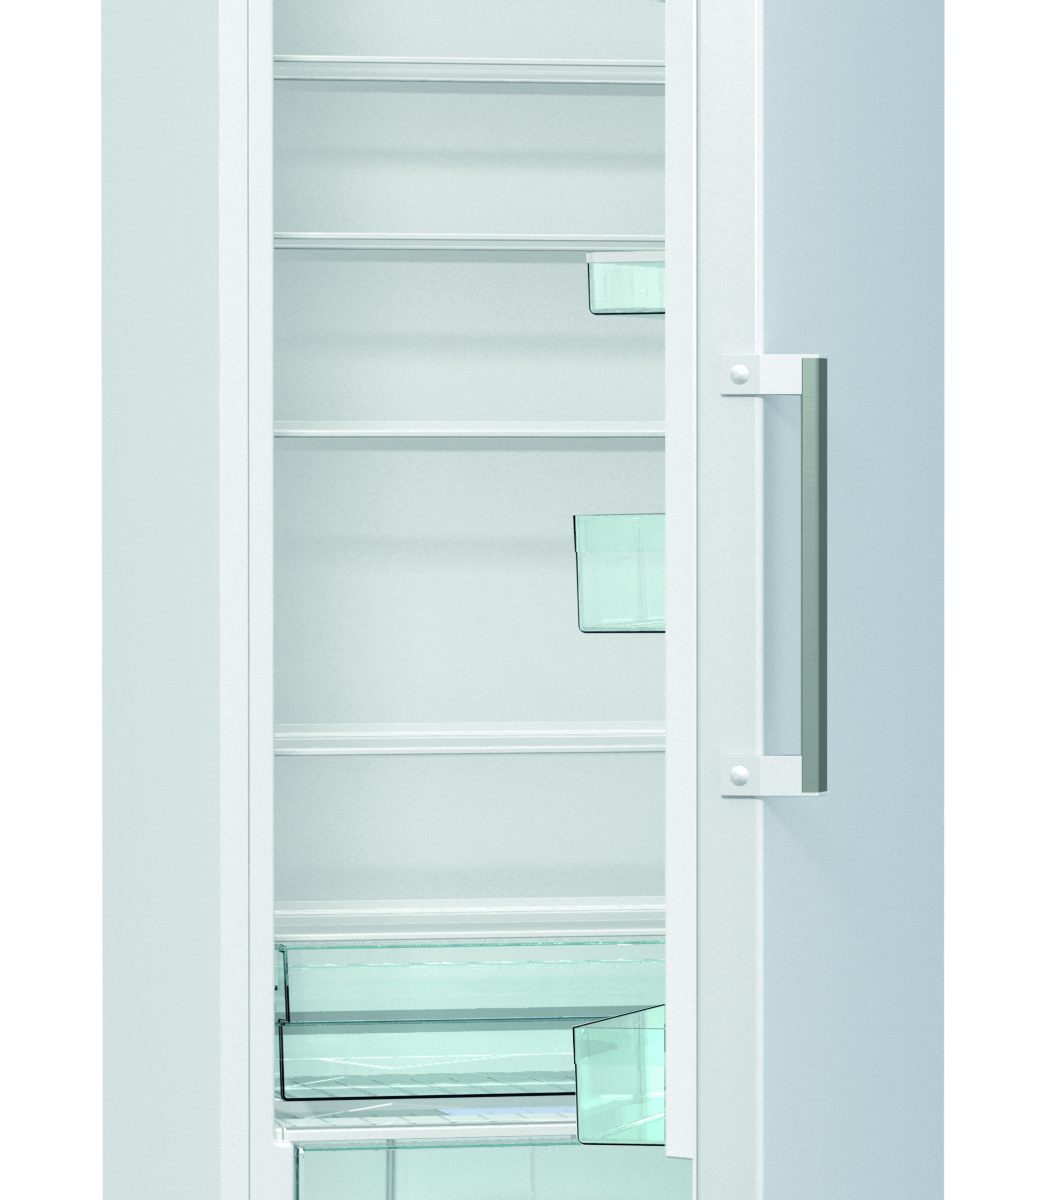 Gorenje køleskab R6191FW